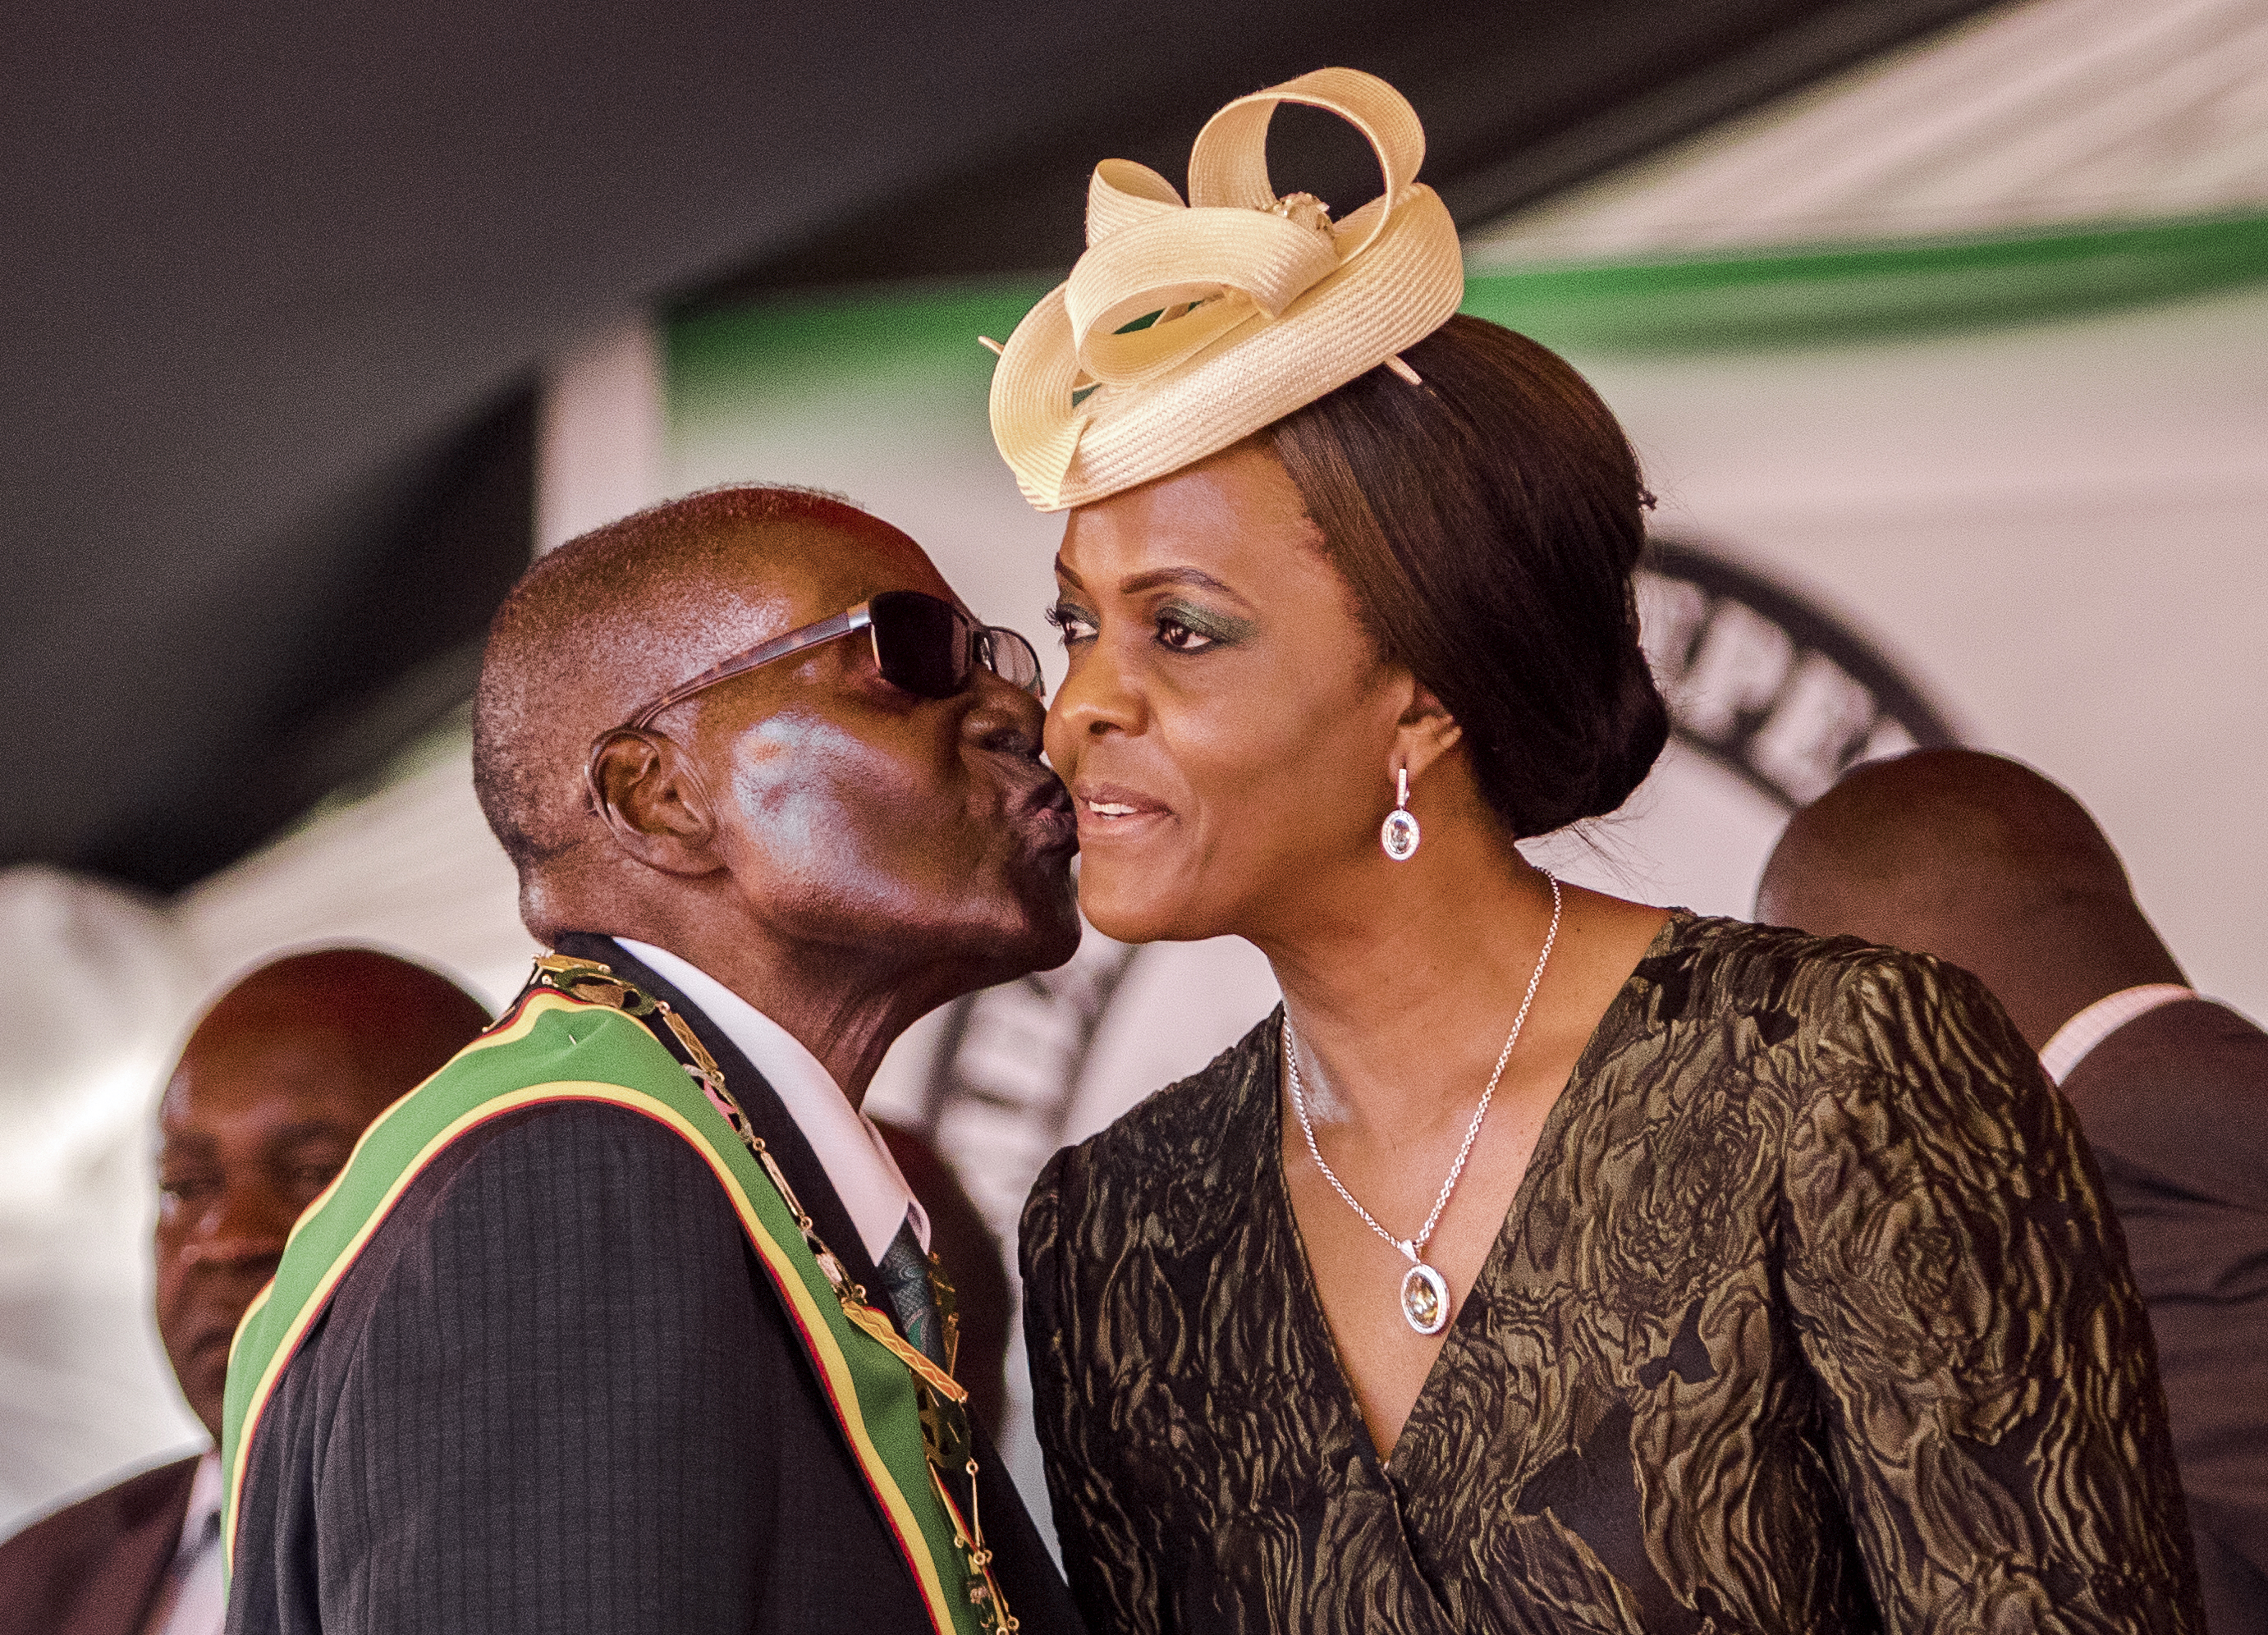 Az idős diktátor "Gucci Grace" néven emlegetett felesége miatt vehette át a hatalmat a hadsereg Zimbabwében